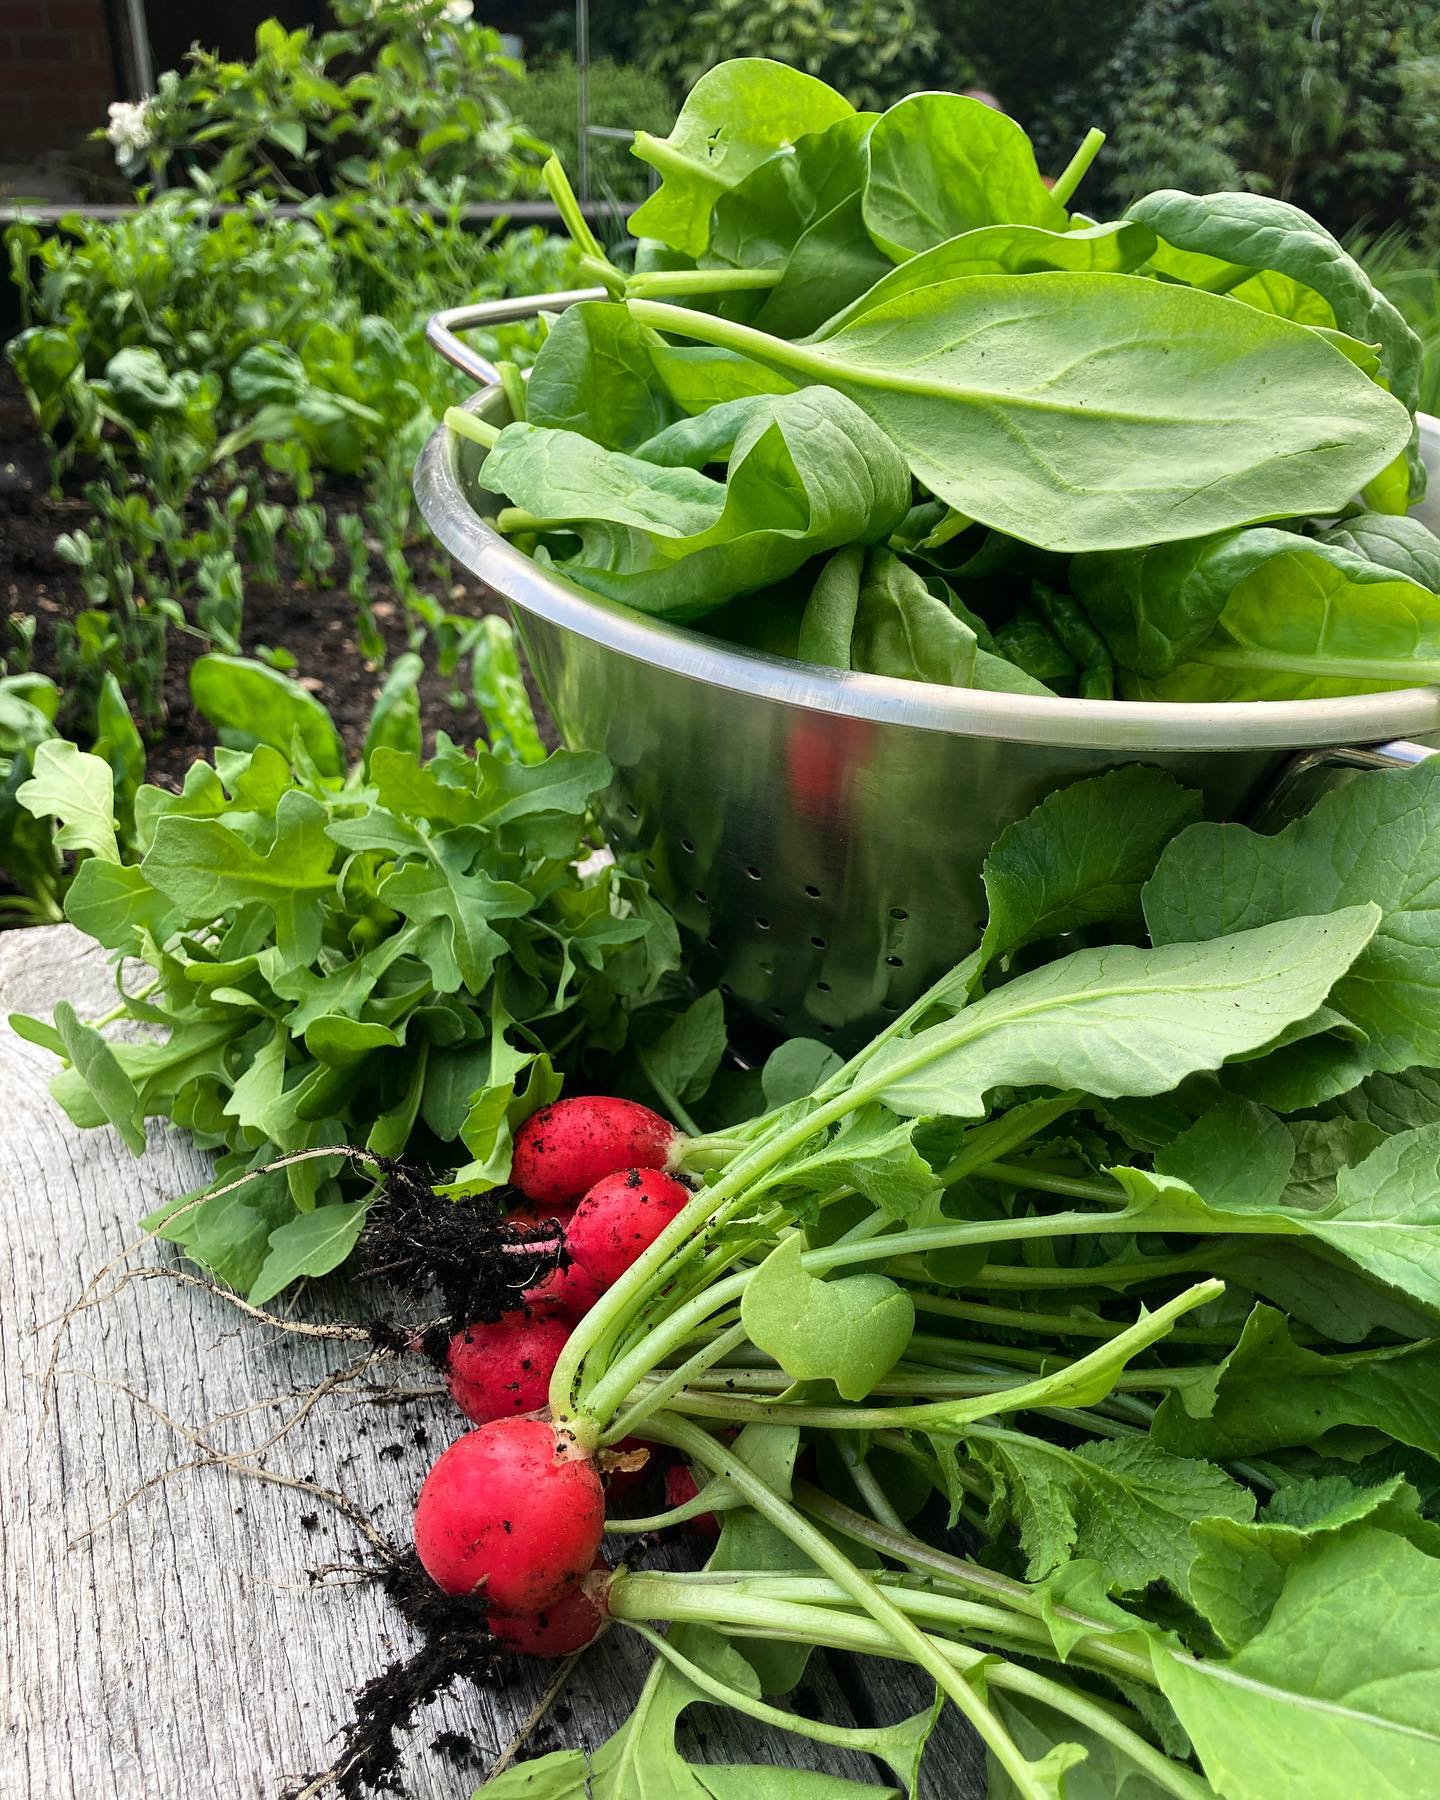 Abendbrot-Ernte: Rucola, Spinat, Radieschen und Salat aus dem eigenen Garten 😋. #gartenglück #eigeneernte #frühling #selbstangebautesgemüse